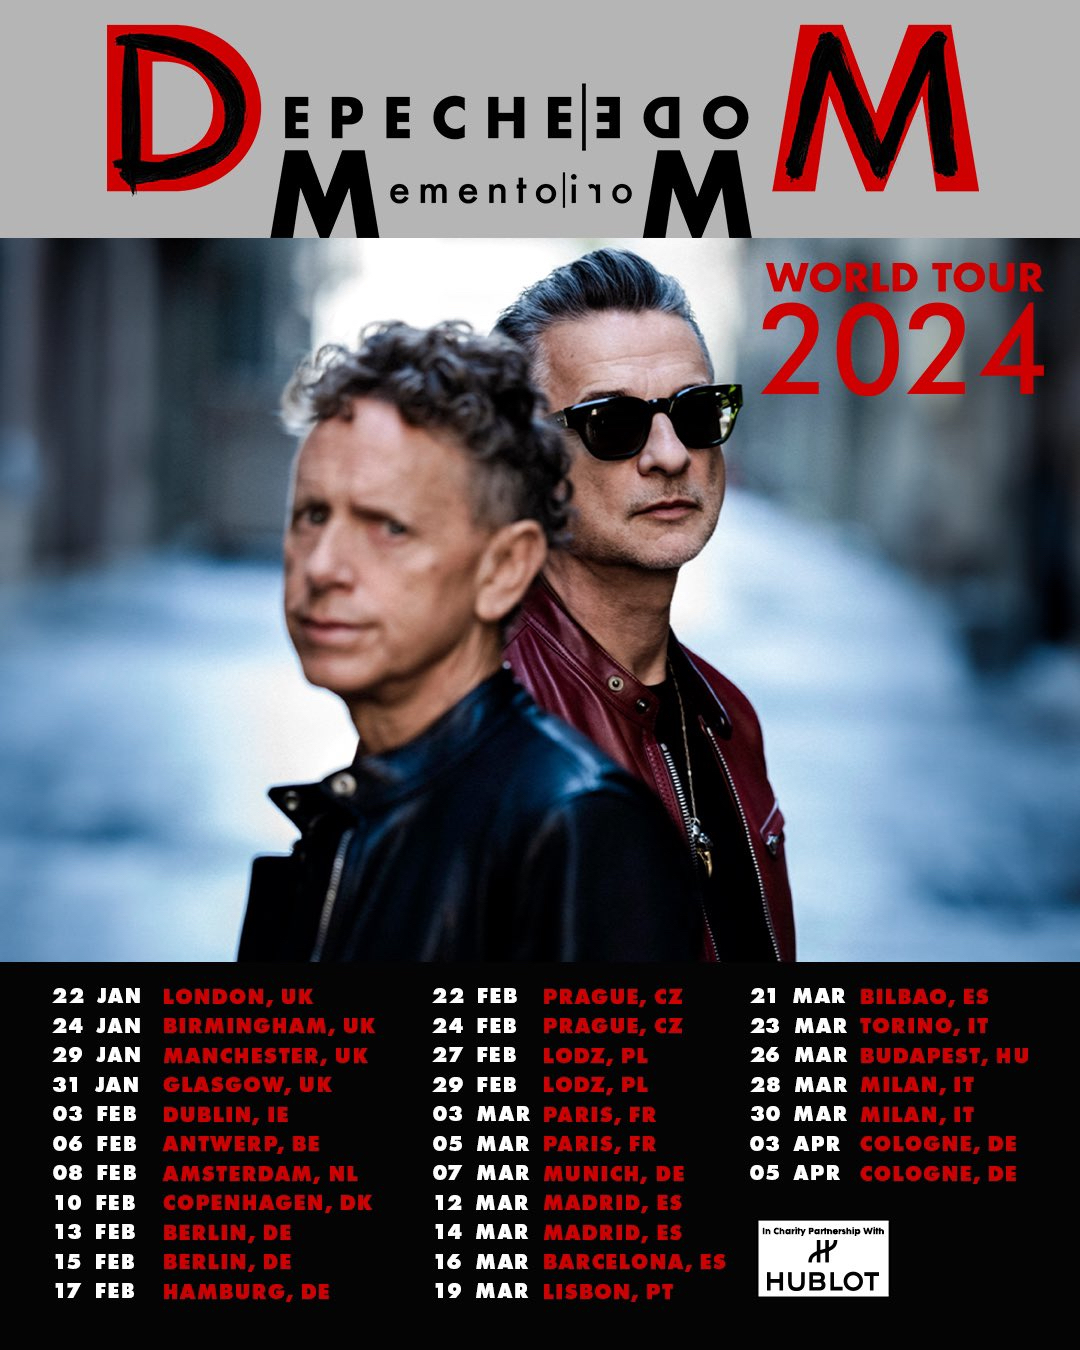 depeche mode tour in europe